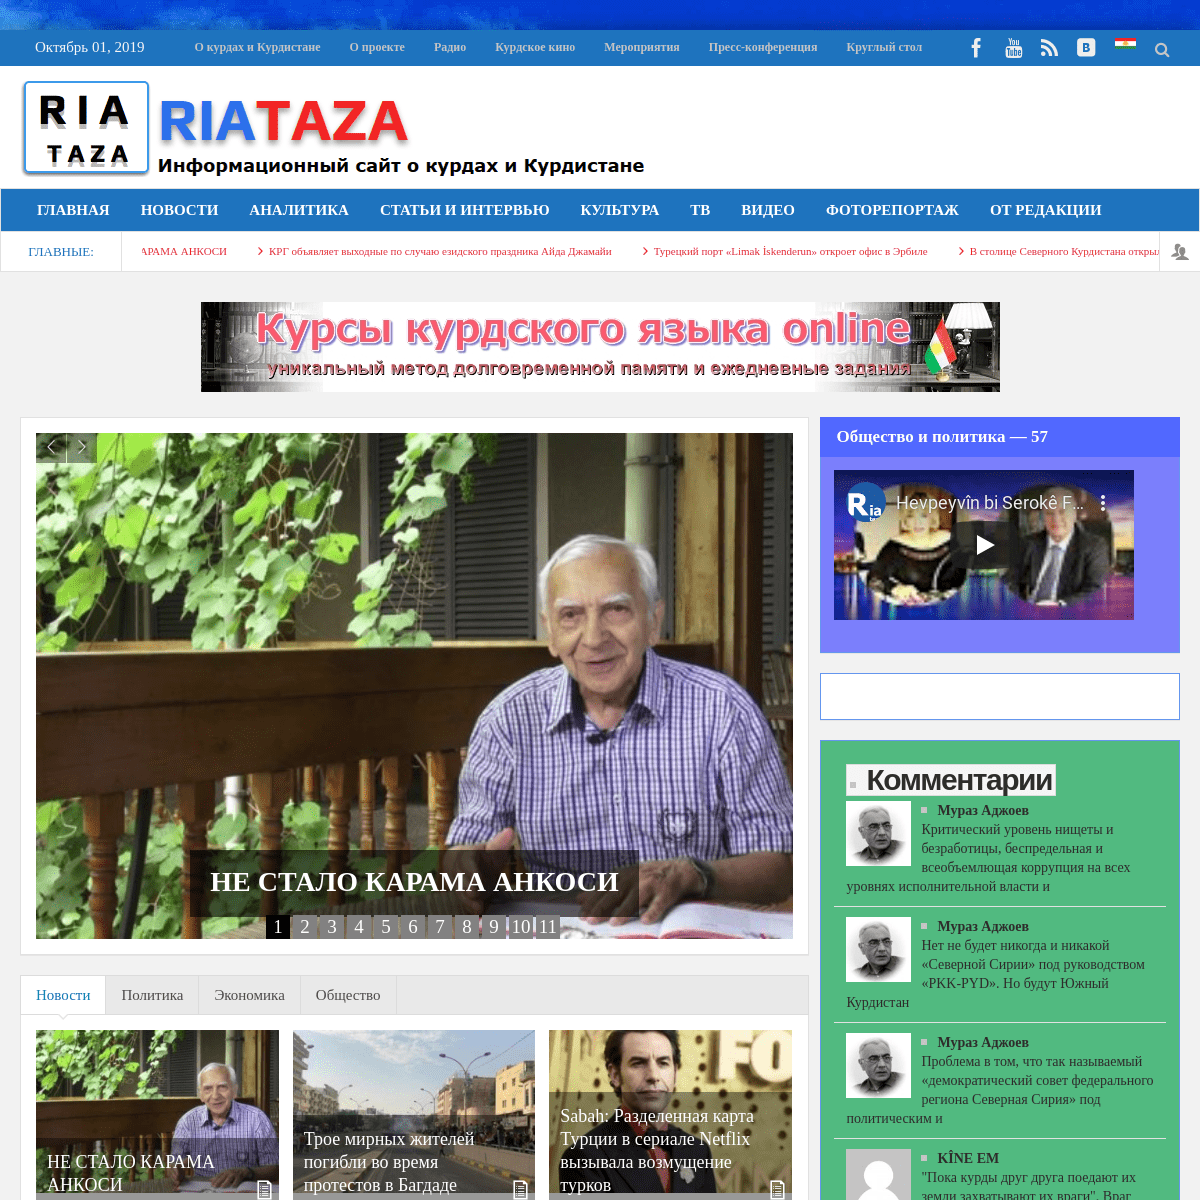 RiaTaza - Информационный сайт о курдах и Курдистане